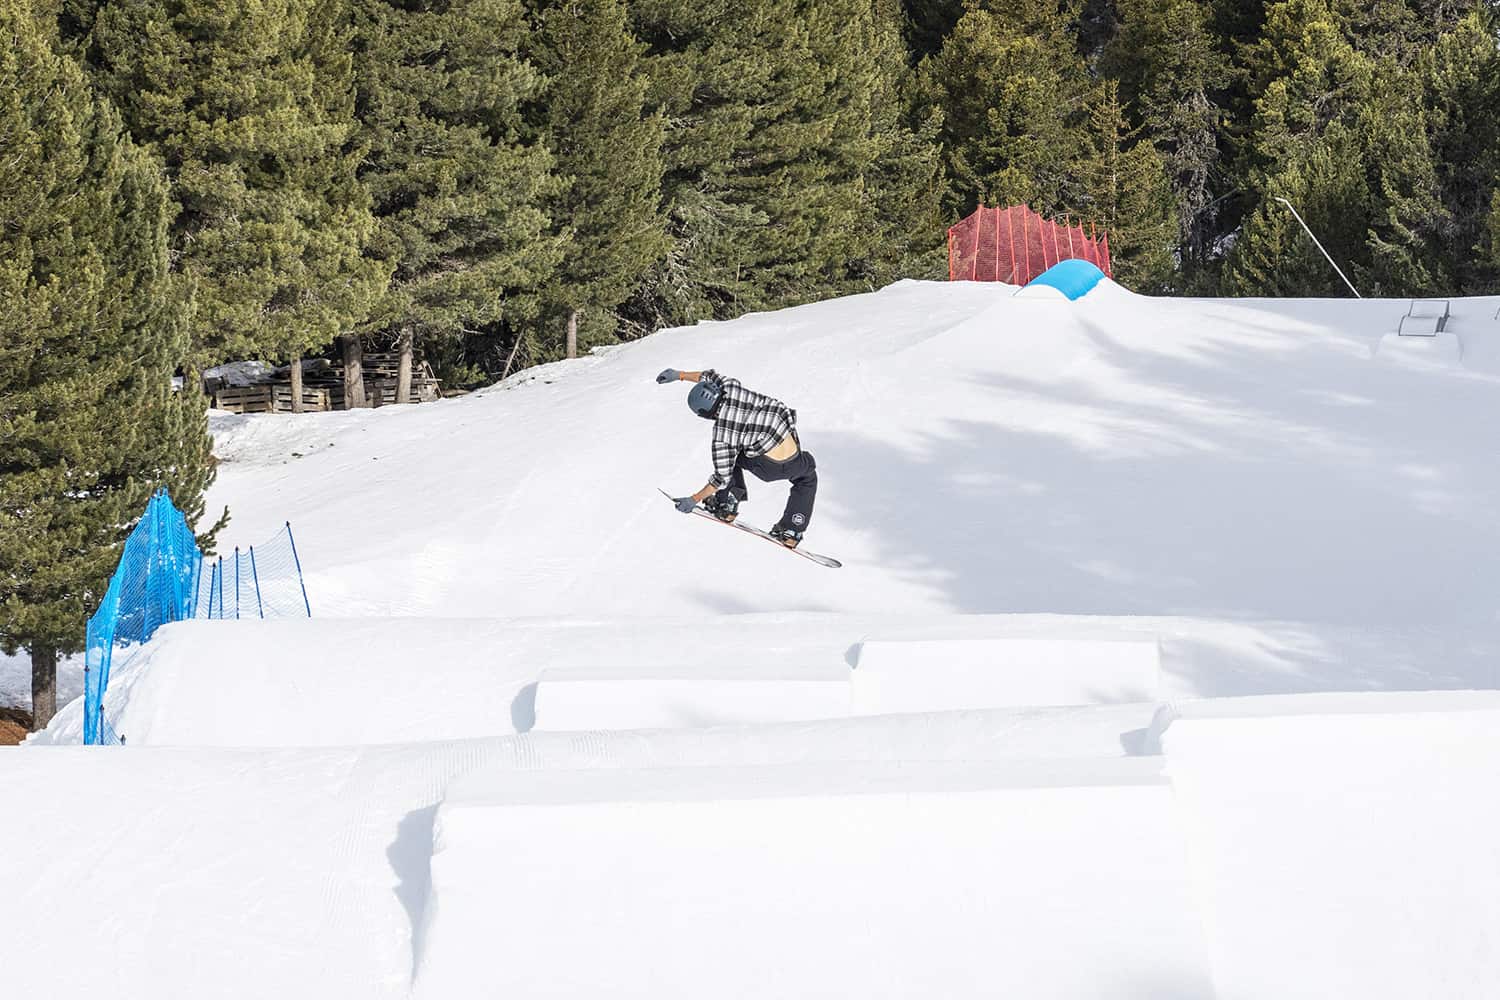 salto snowboarder su kicker 5 metri nello snowpark di bormio